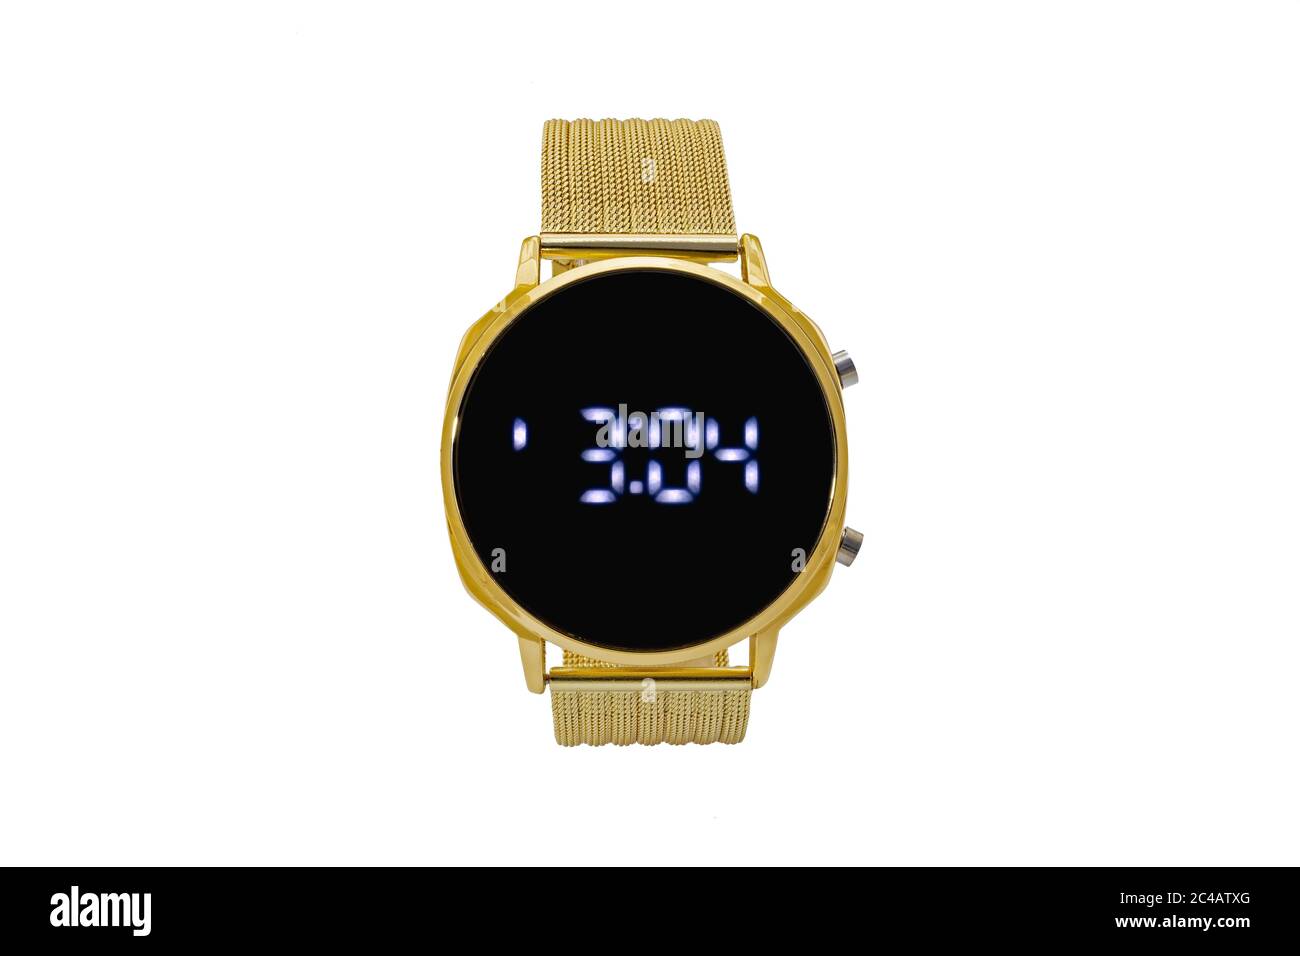 Smartwatch rotondo con cinturino in metallo con mesh dorata, quadrante nero e numeri digitali, isolato su sfondo bianco. Foto Stock